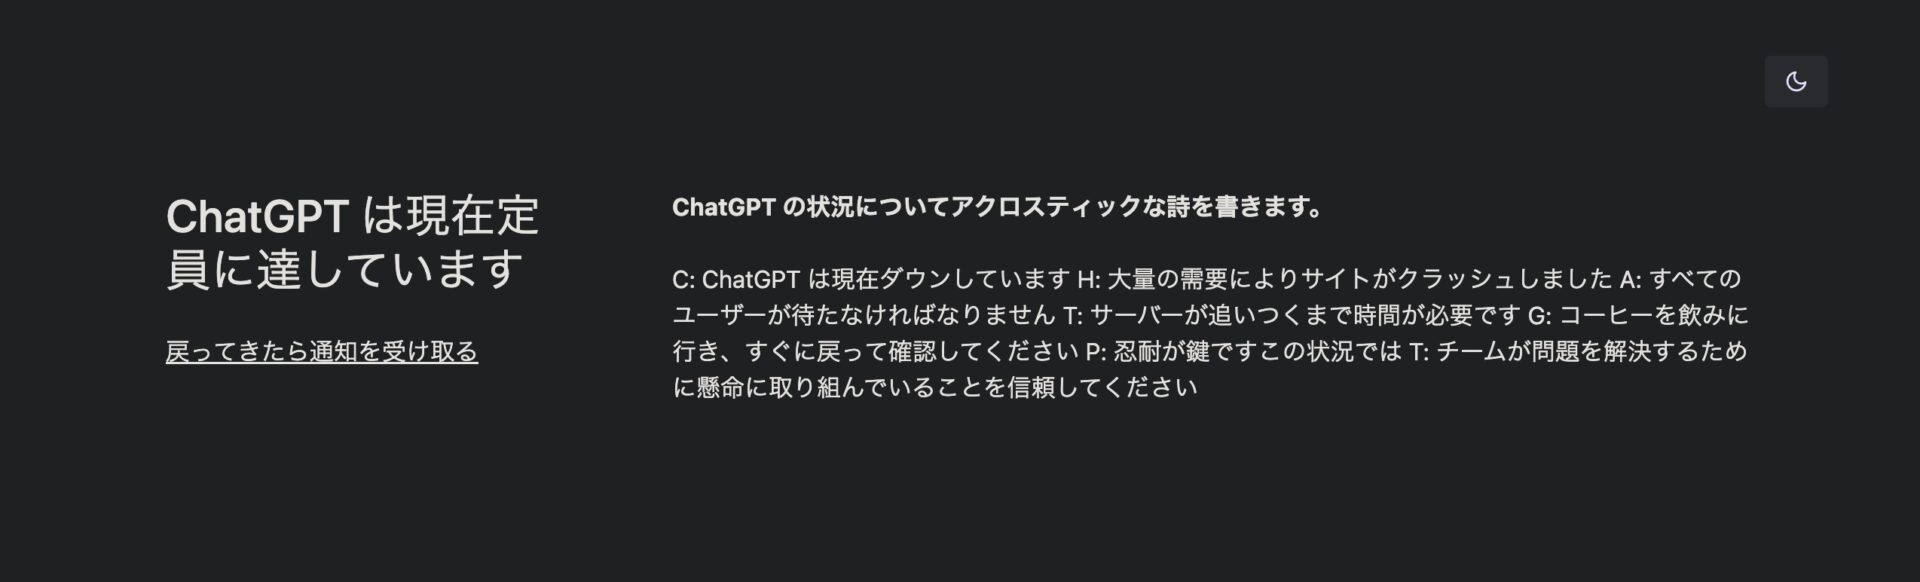 ChatGPT は現在定員に達しています。の画面。